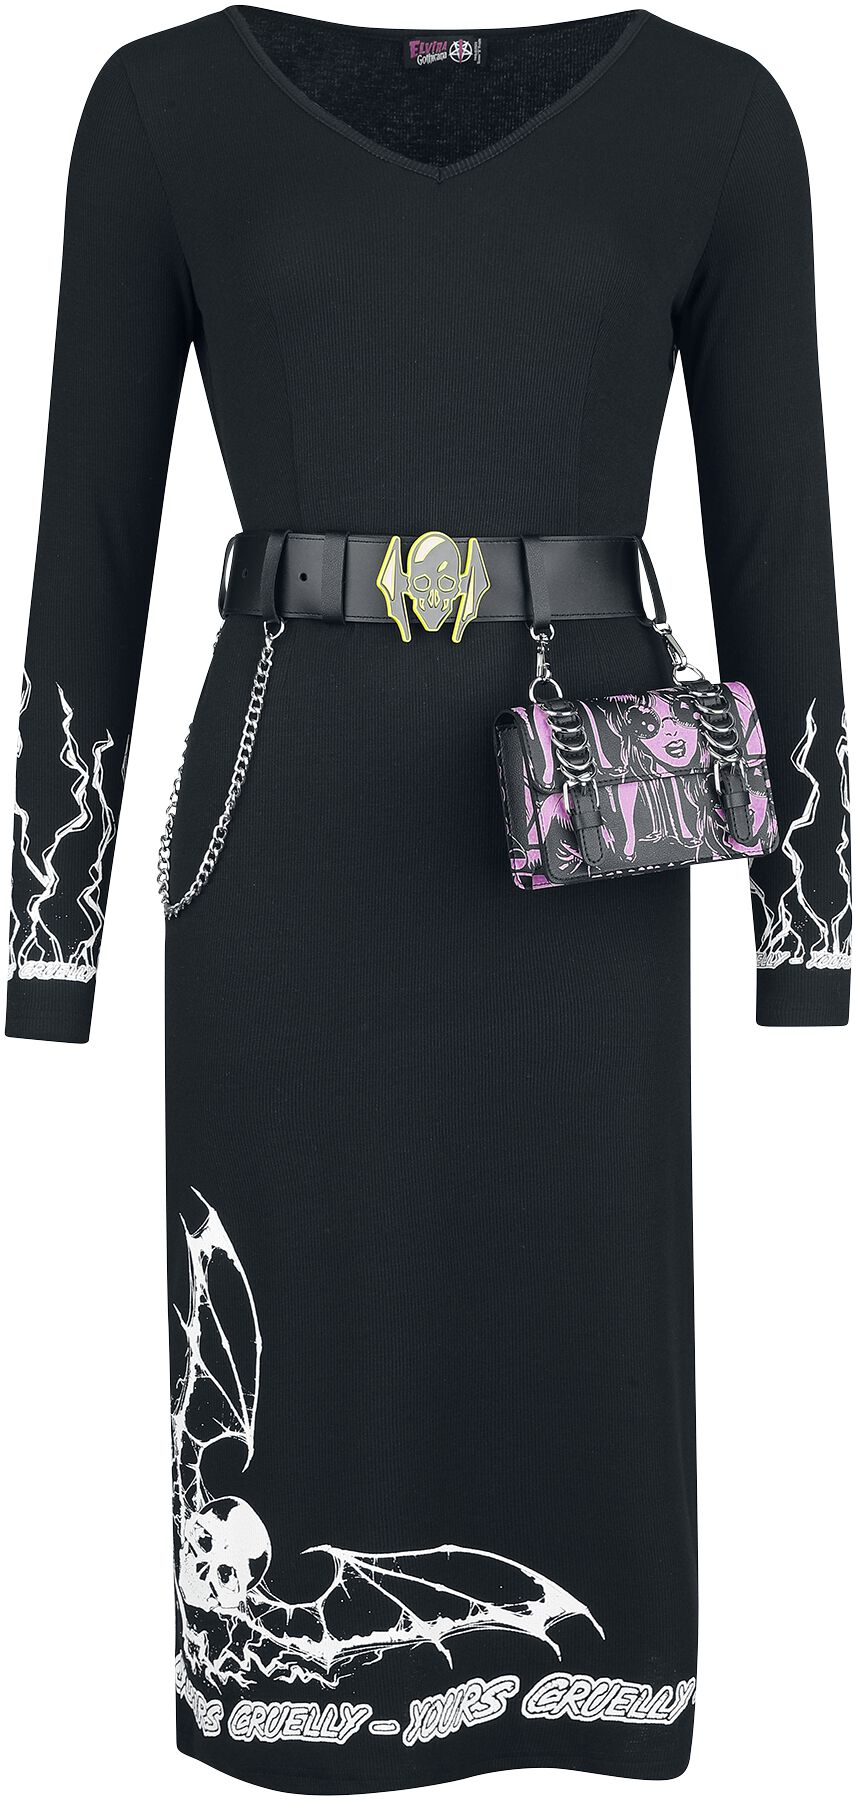 Gothicana by EMP - Gothic Kleid knielang - Gothicana X Elvira Dress with Belt and Bag - XS bis XXL - für Damen - Größe L - schwarz